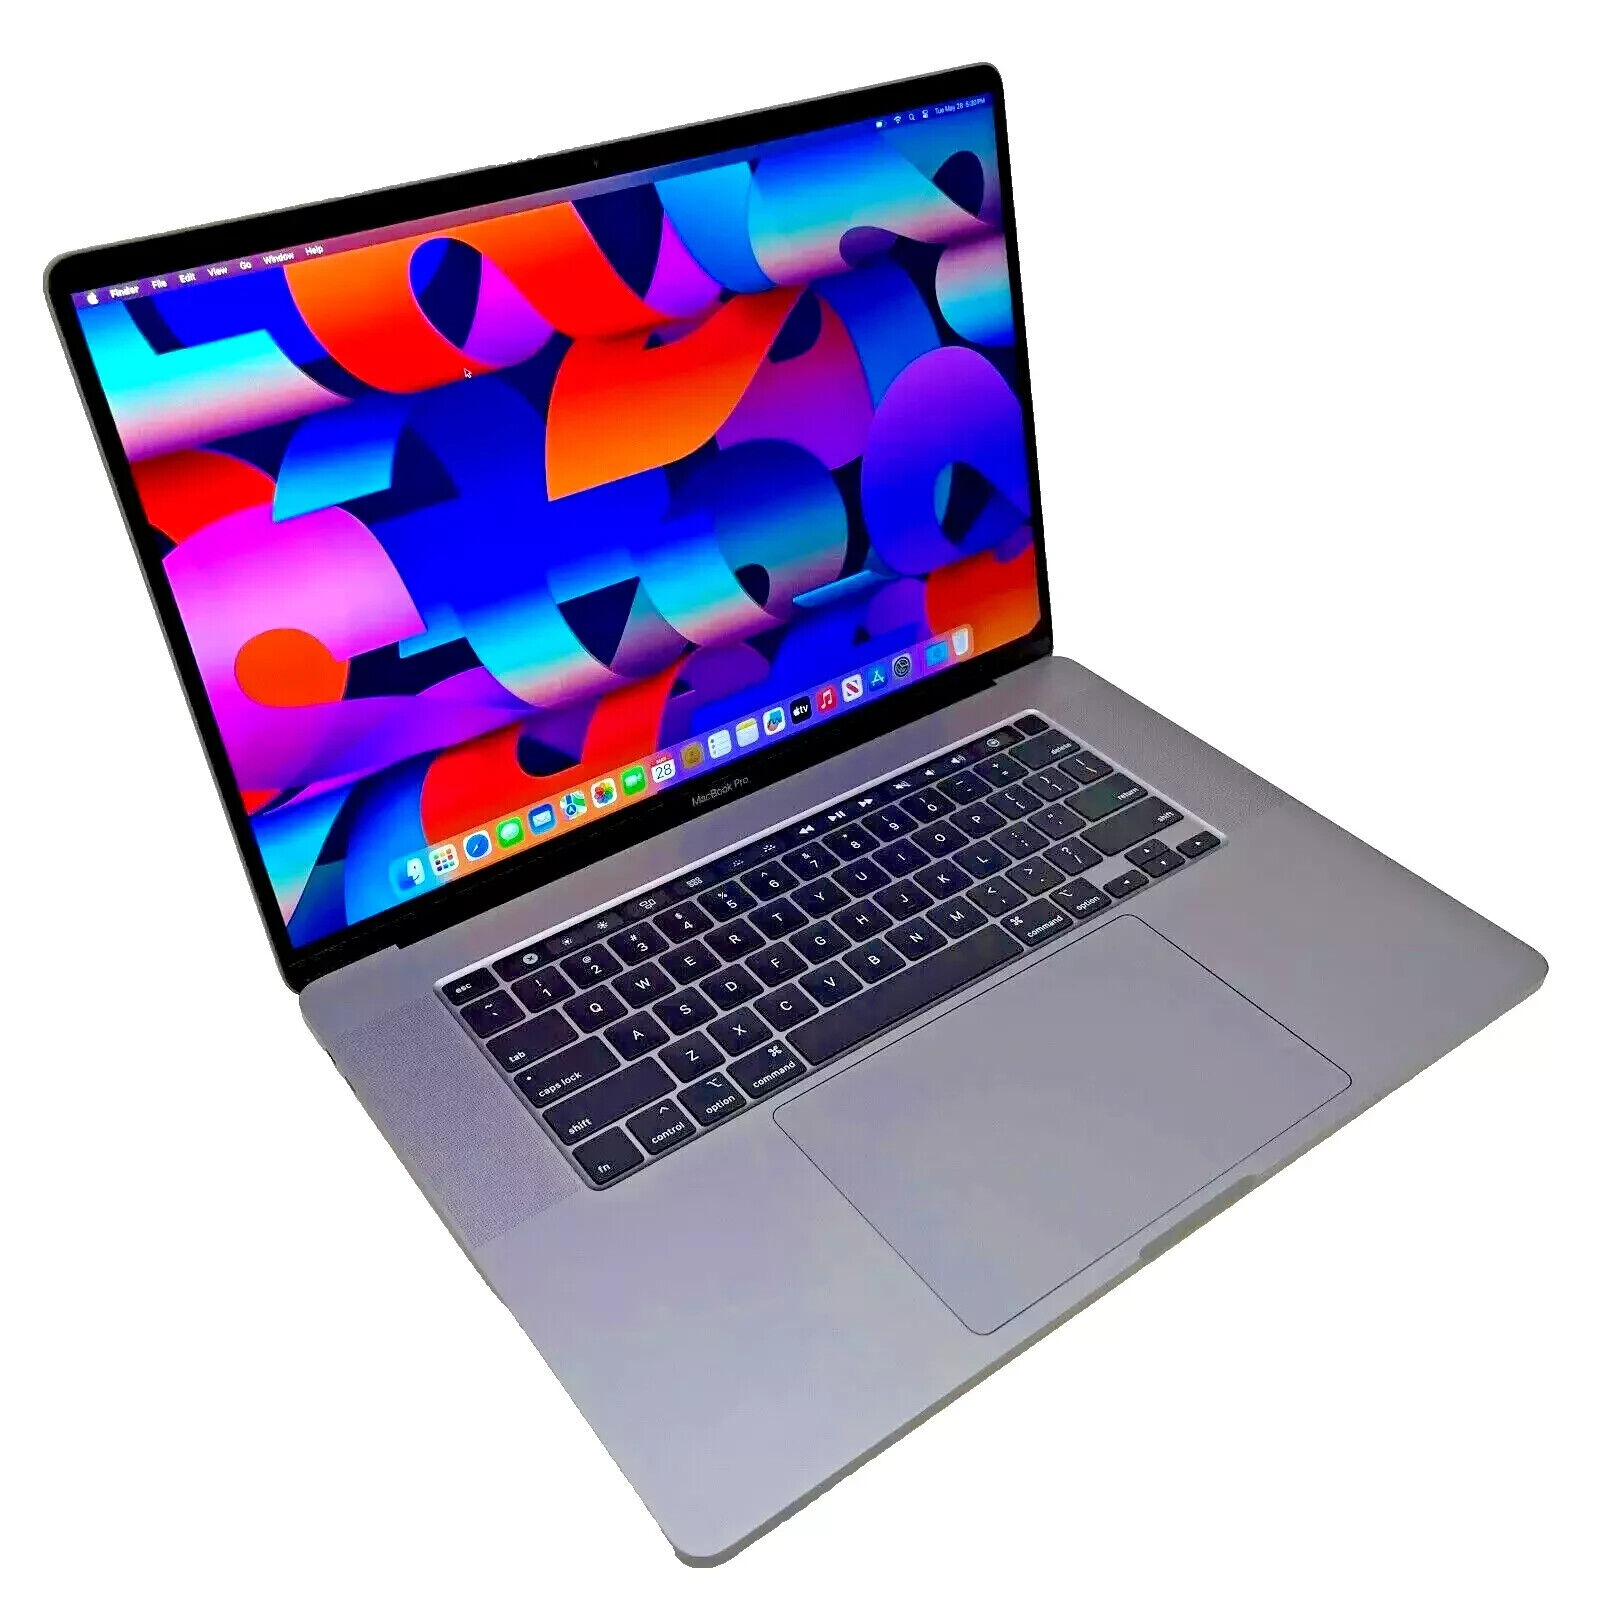 SONOMA Apple MacBook Pro 16 inch 2.6GHz 6 Core i7 16GB 512GB SSD 2019/2021 5300